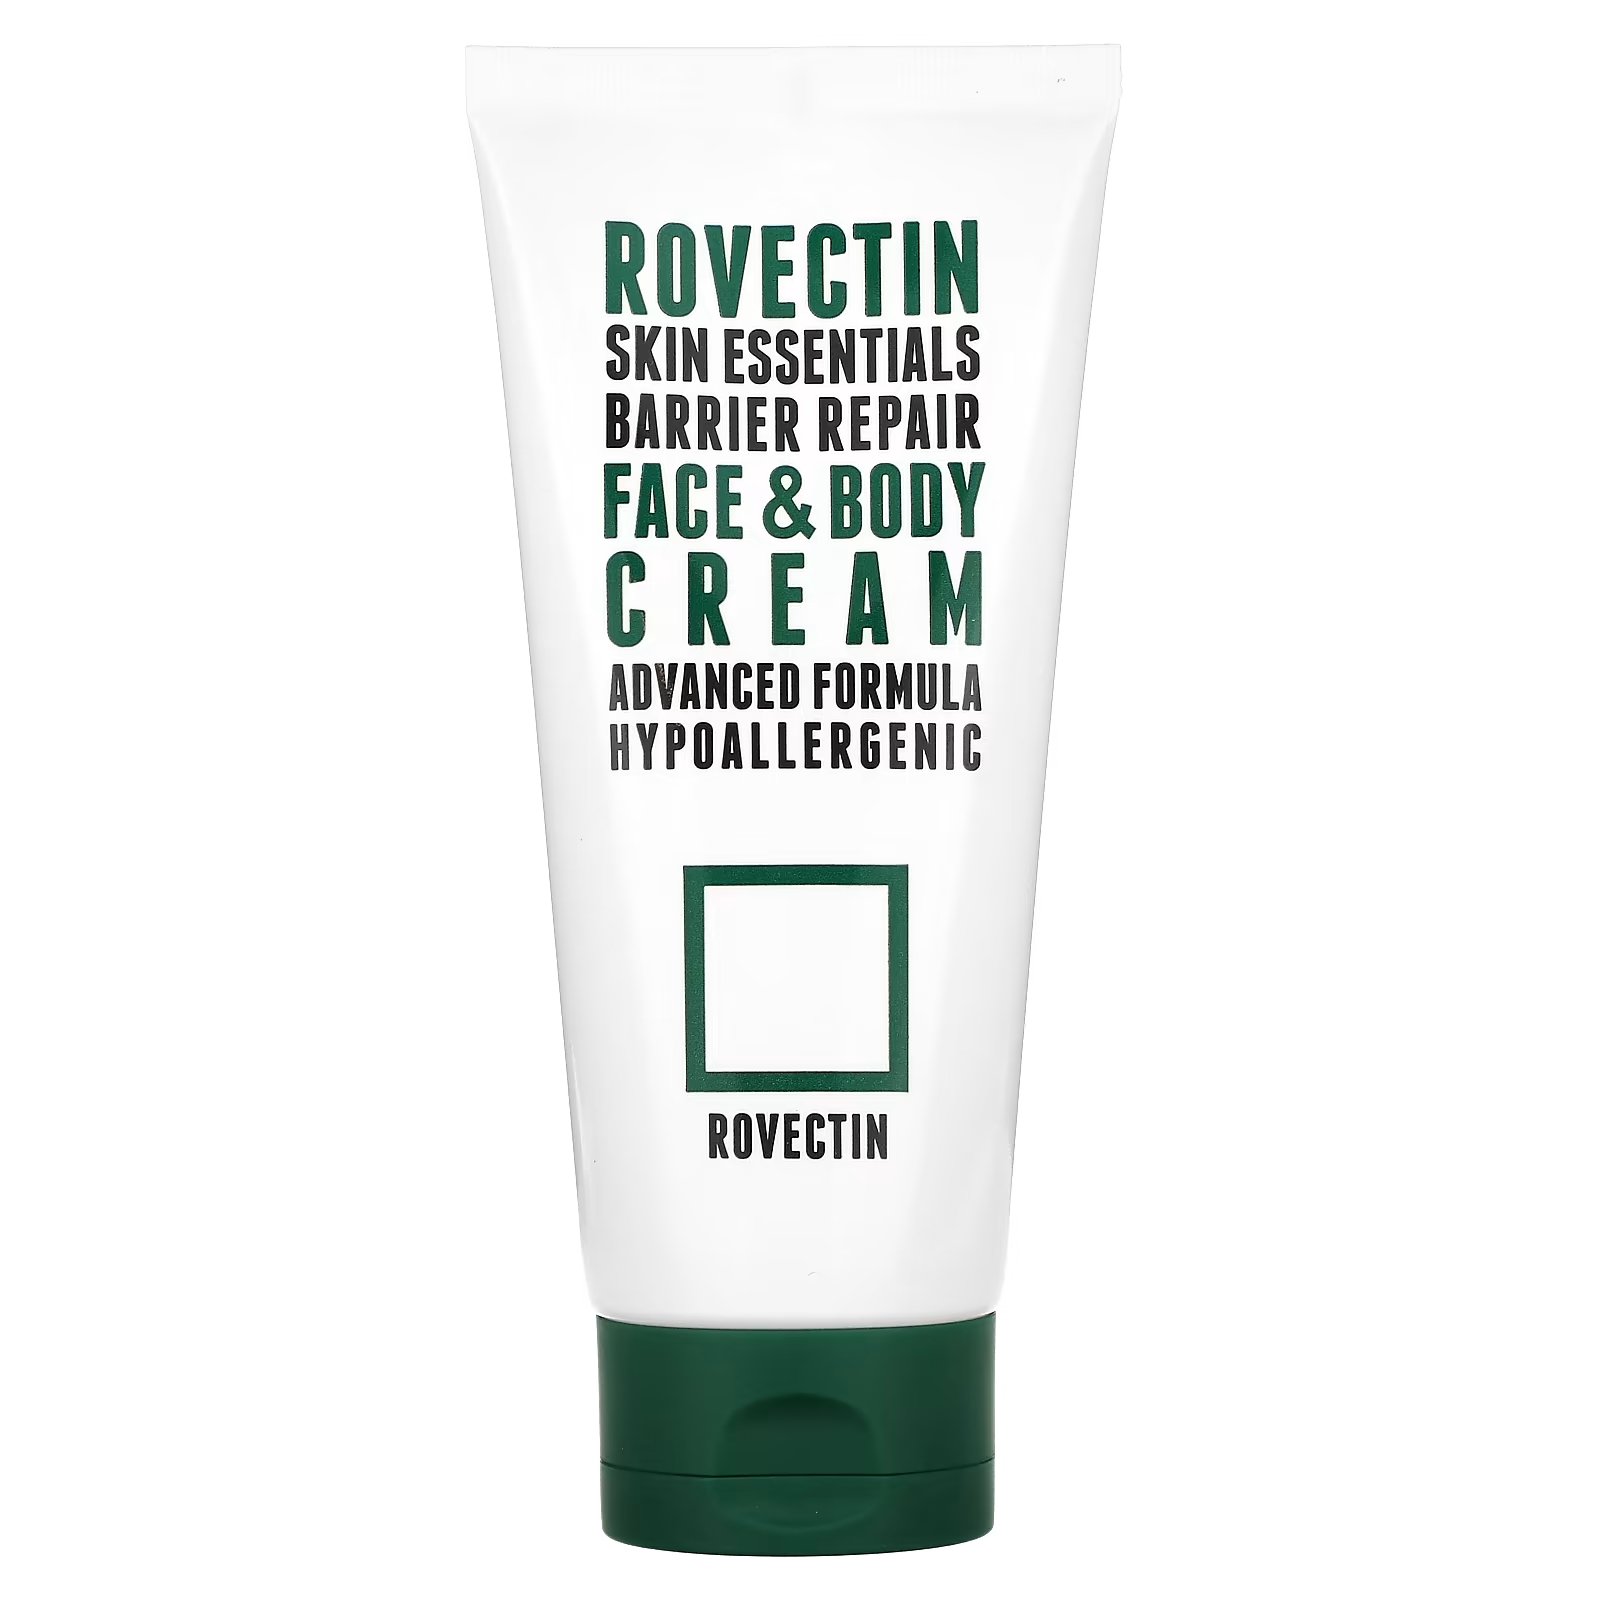 Крем для лица и тела Rovectin Skin Essentials восстанавливающий, 175 мл цена и фото